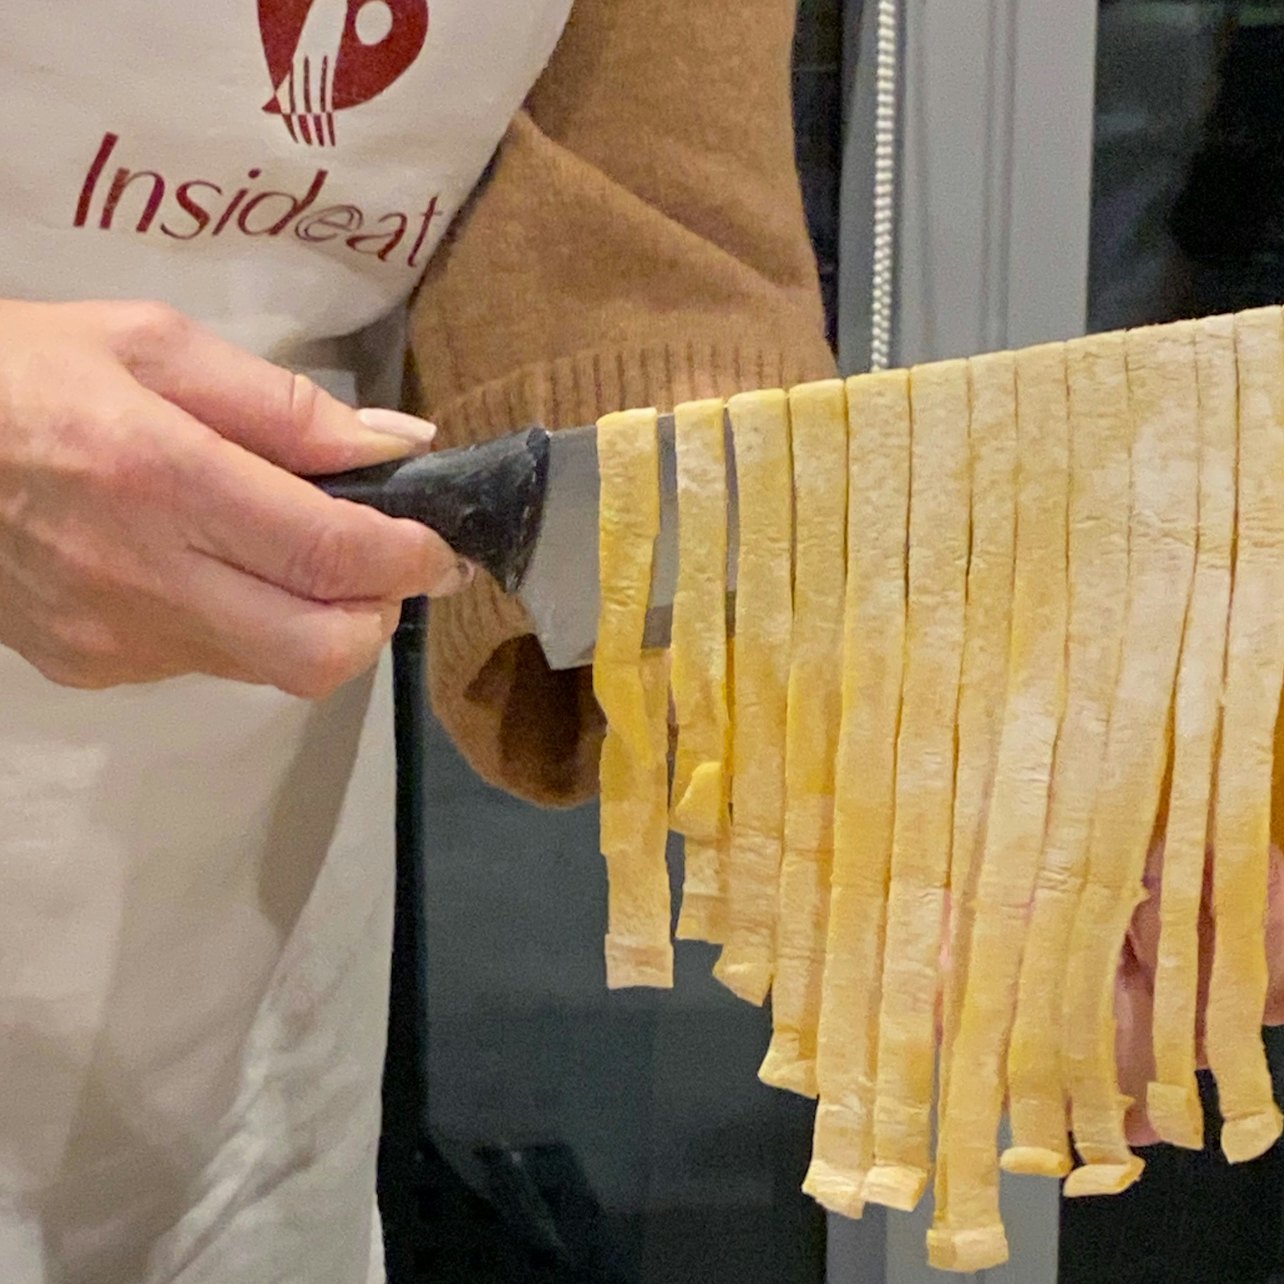 Clase de elaboración de pasta, raviolis y tiramisú en Roma - Alojamientos en Roma